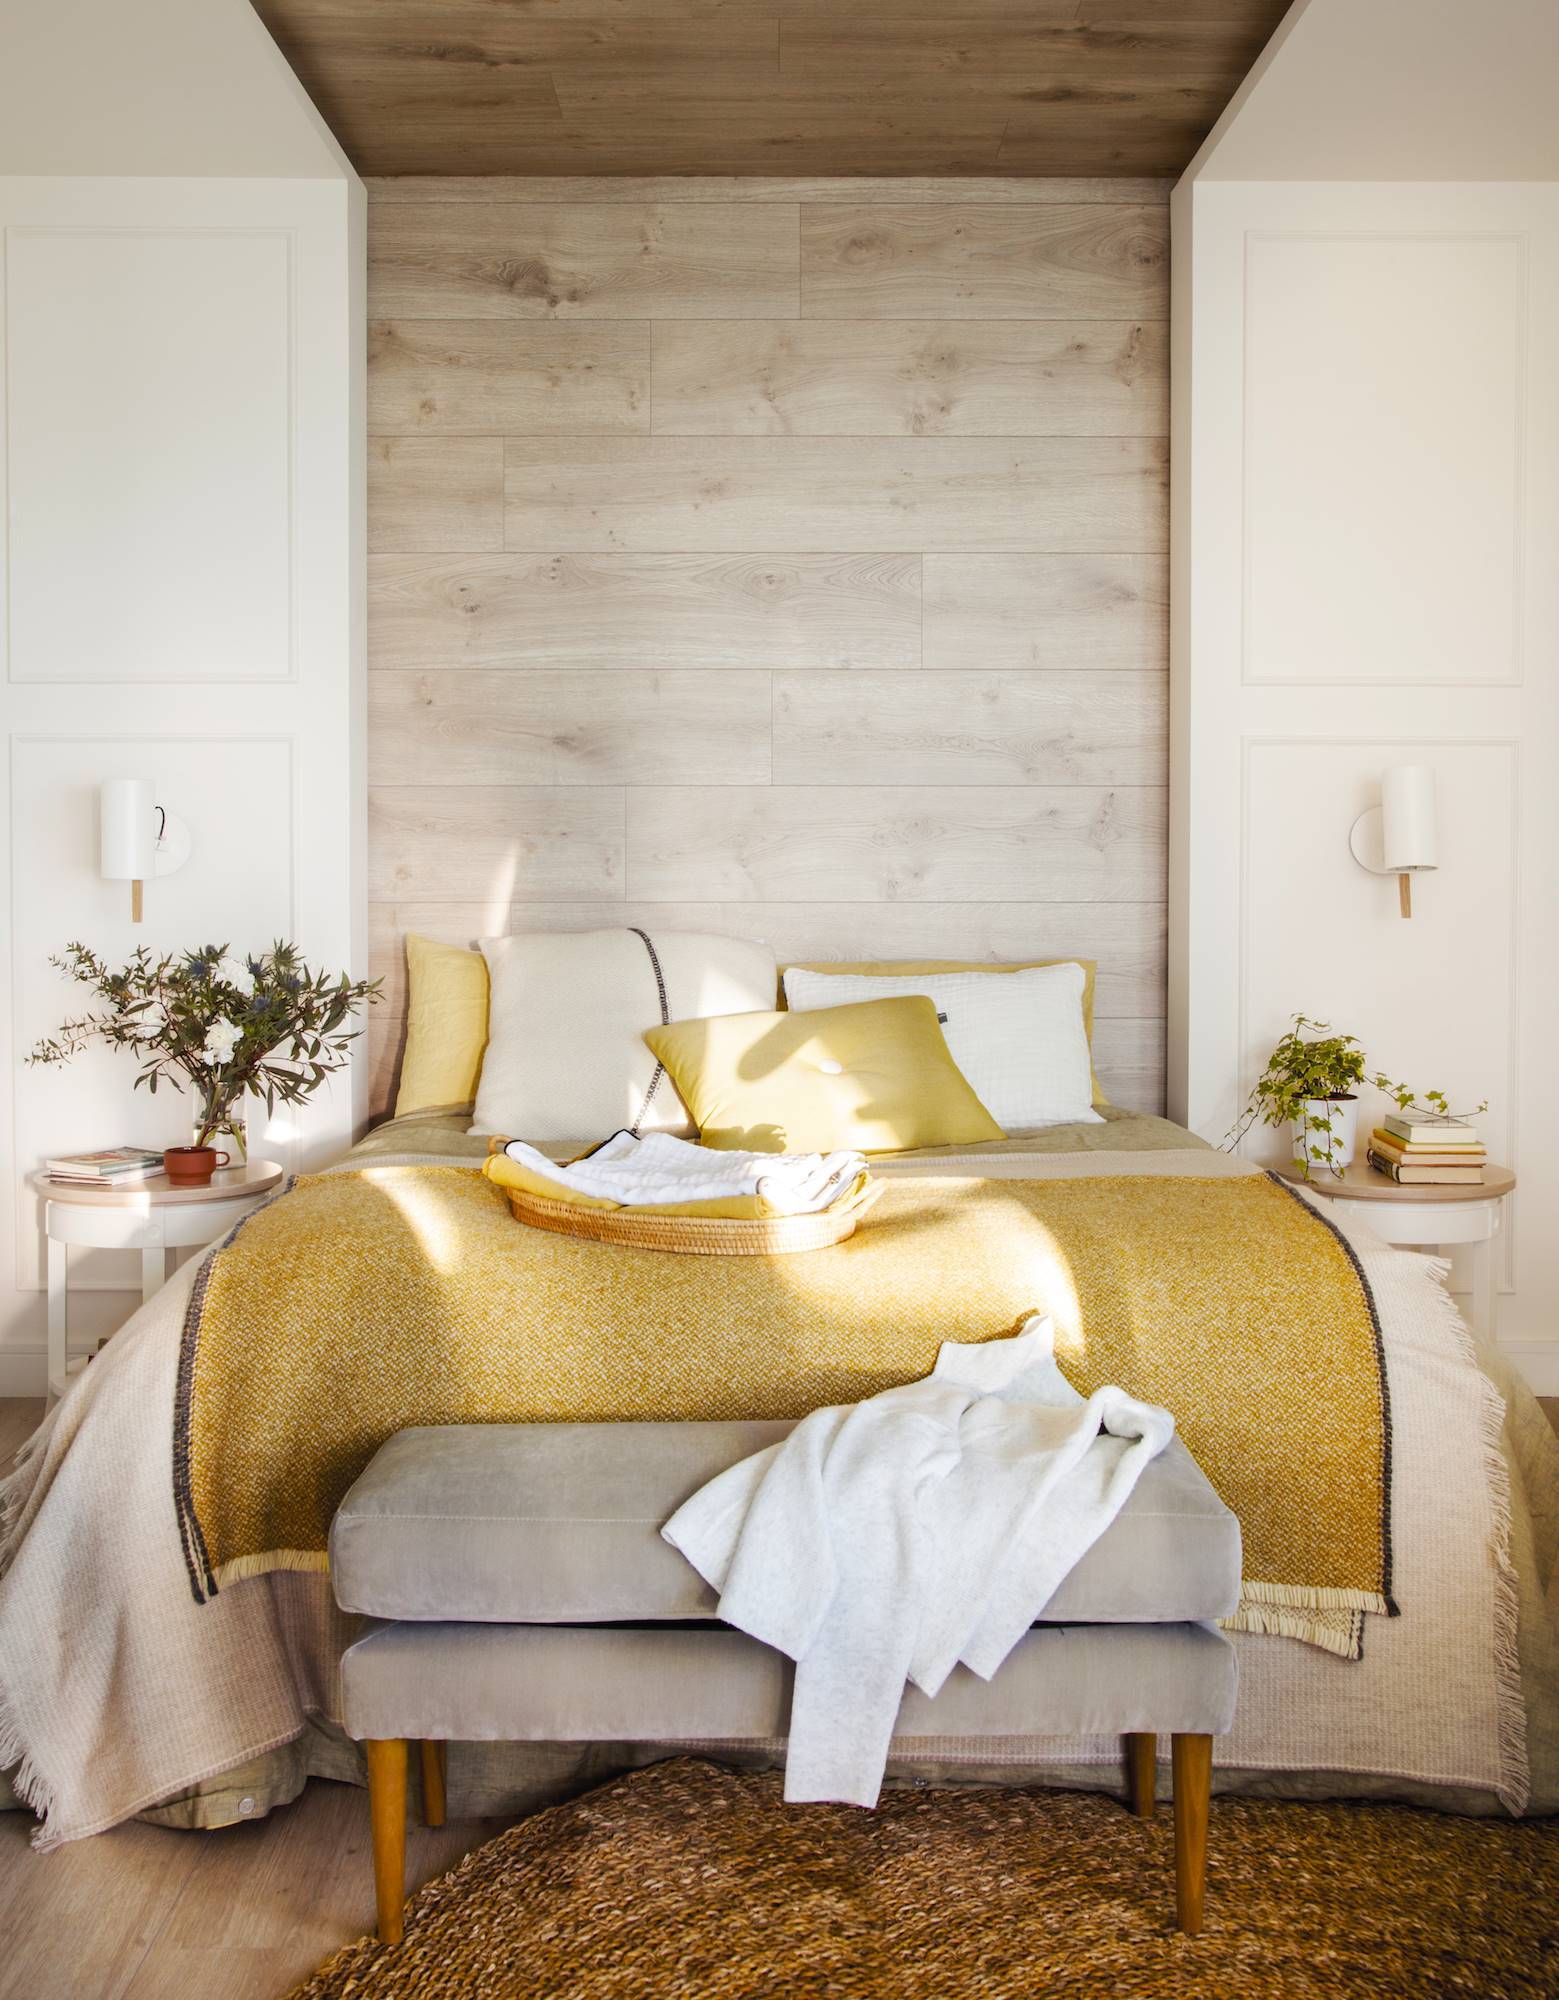 Dormitorio con cabecero de madera, ropa de cama en tonos ocres y banco tapizado en terciopelo 00483090 